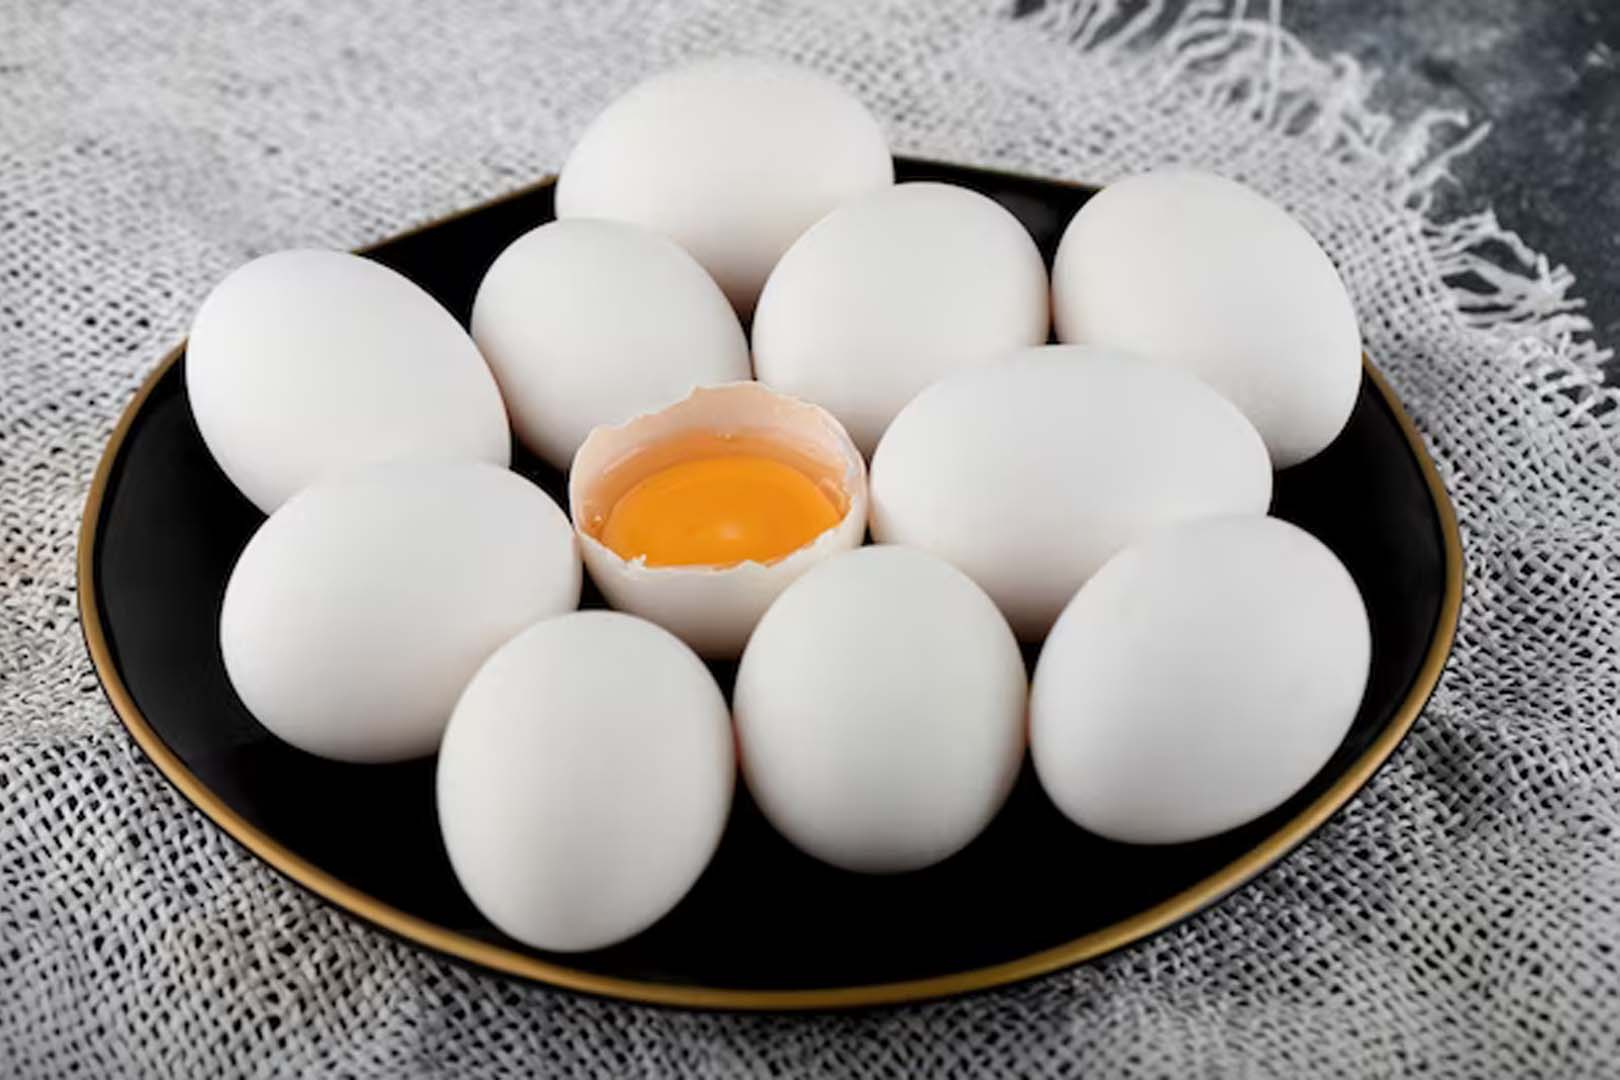  Manfaat Telur Ayam Kampung untuk Kesehatan dan Nutrisi